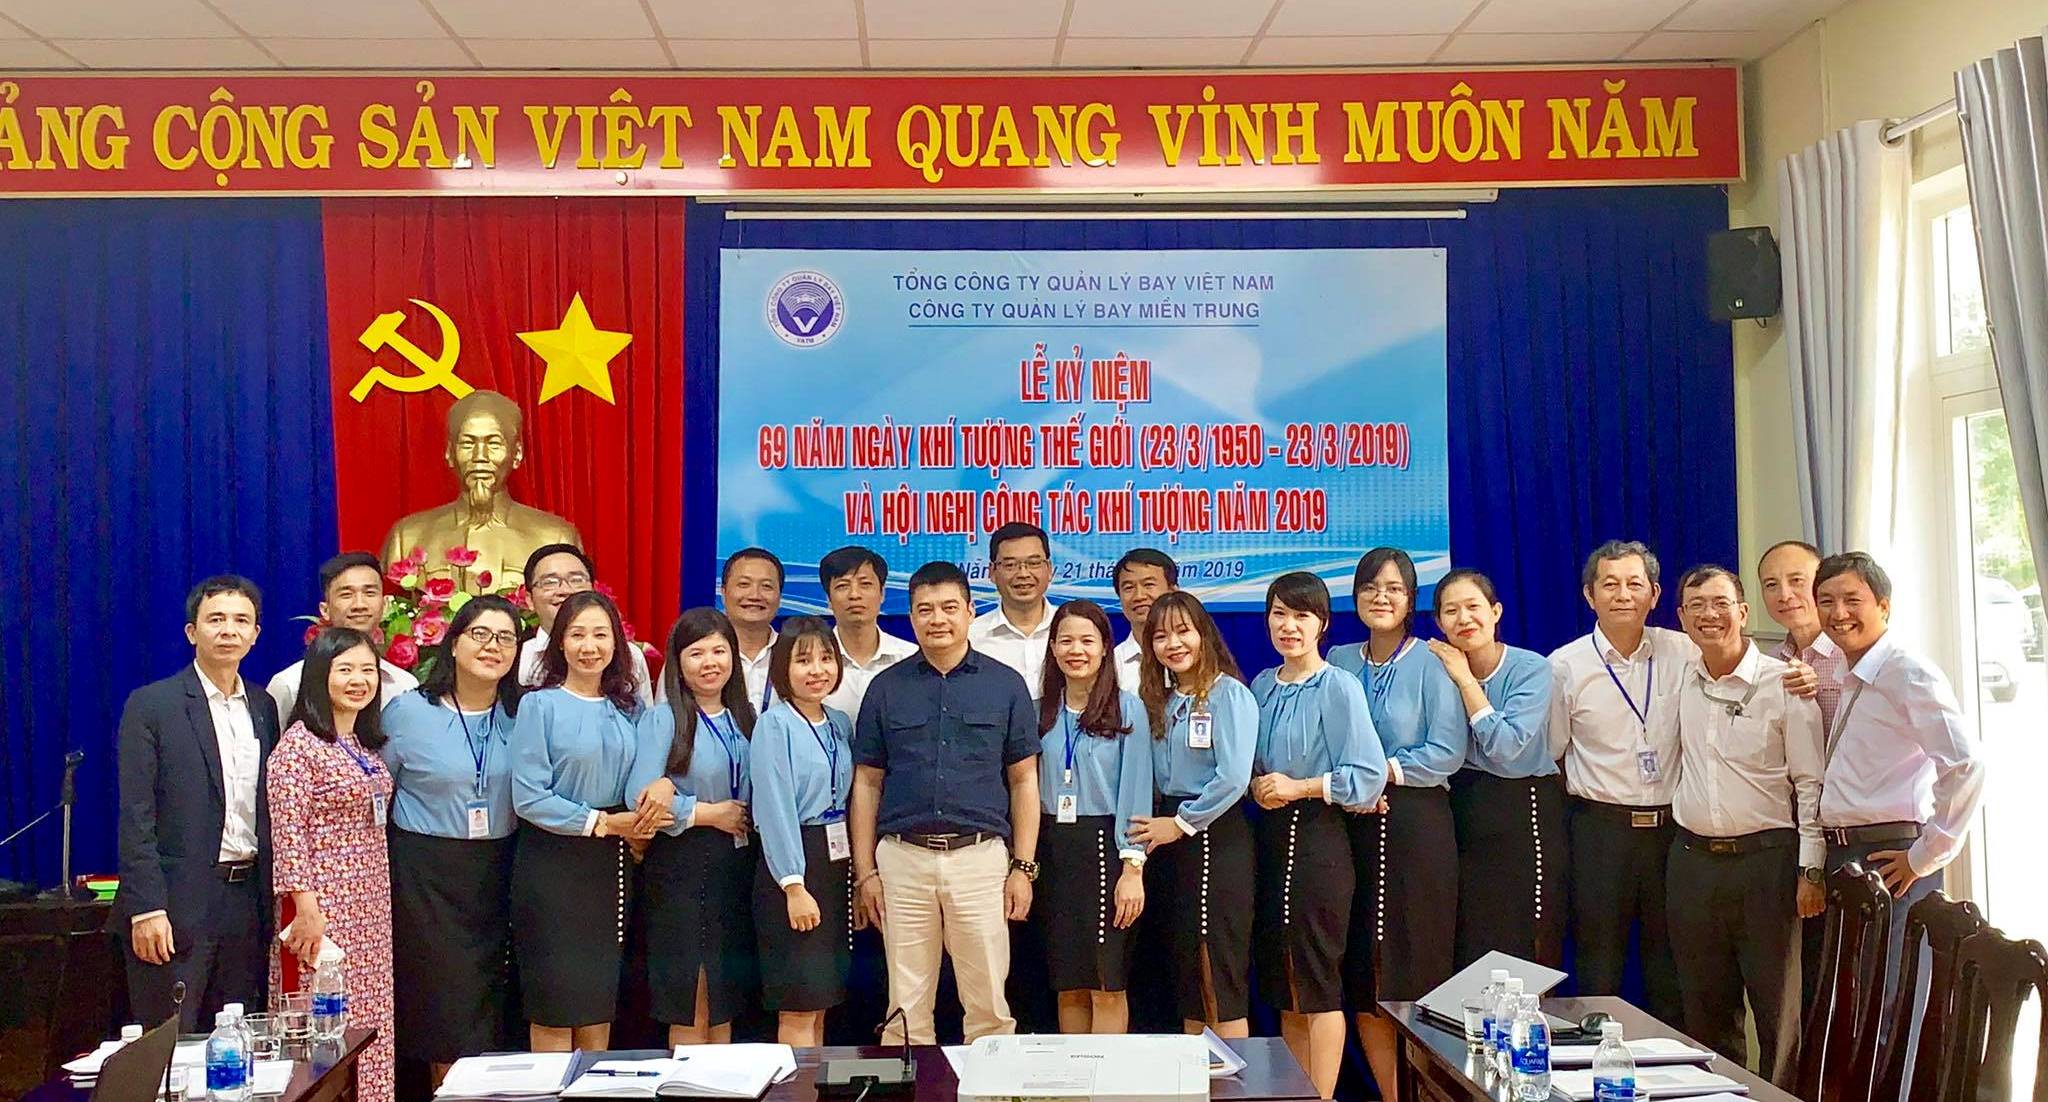 Trung tâm Khí tượng hàng không Đà Nẵng: Hội nghị Công tác khí tượng năm 2019